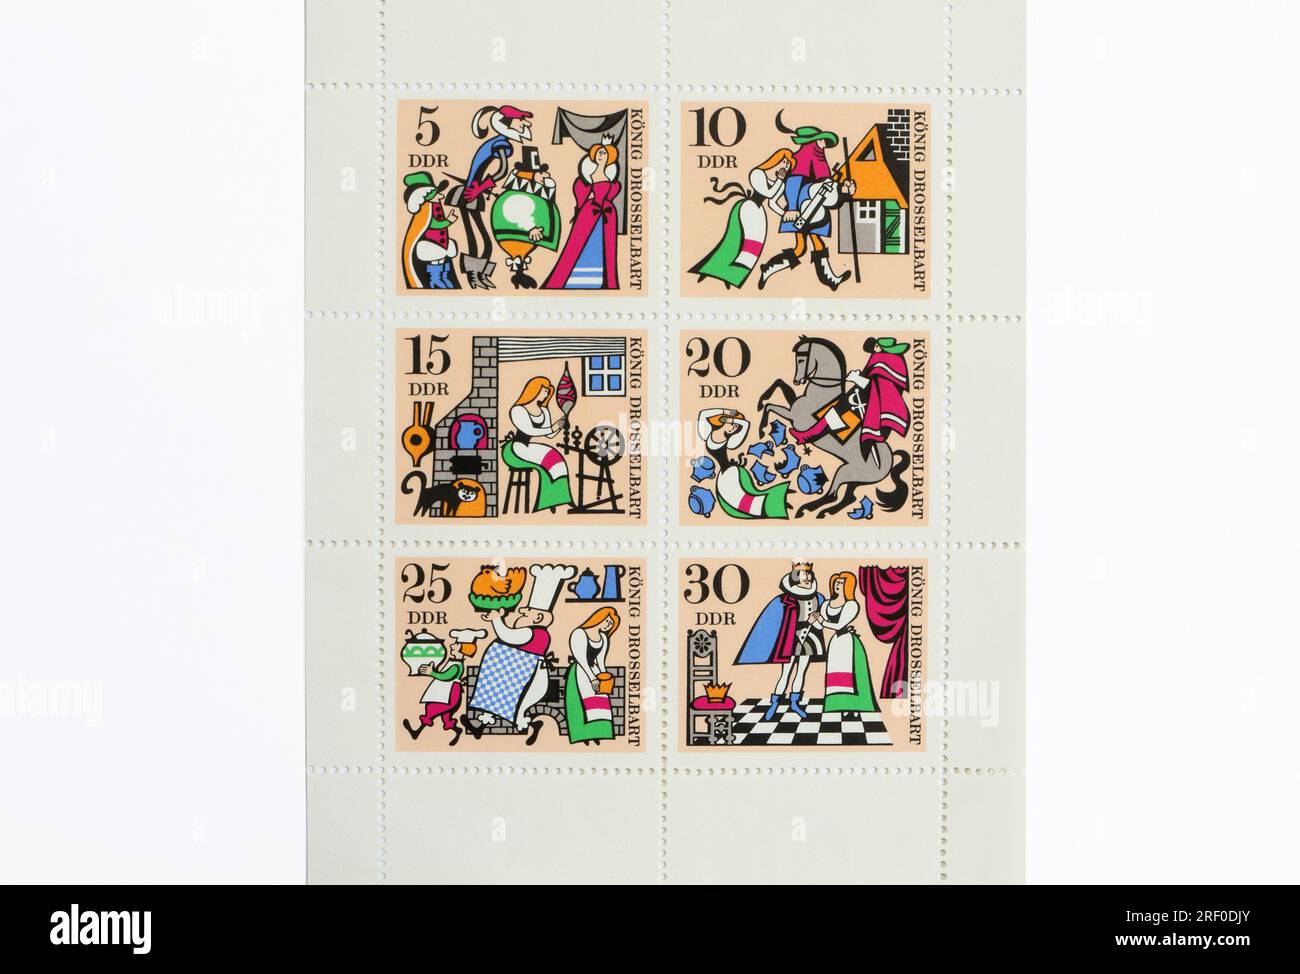 Allemagne DDR 1967 timbres-poste feuille de contes de fées, hobby de collection de timbres Banque D'Images